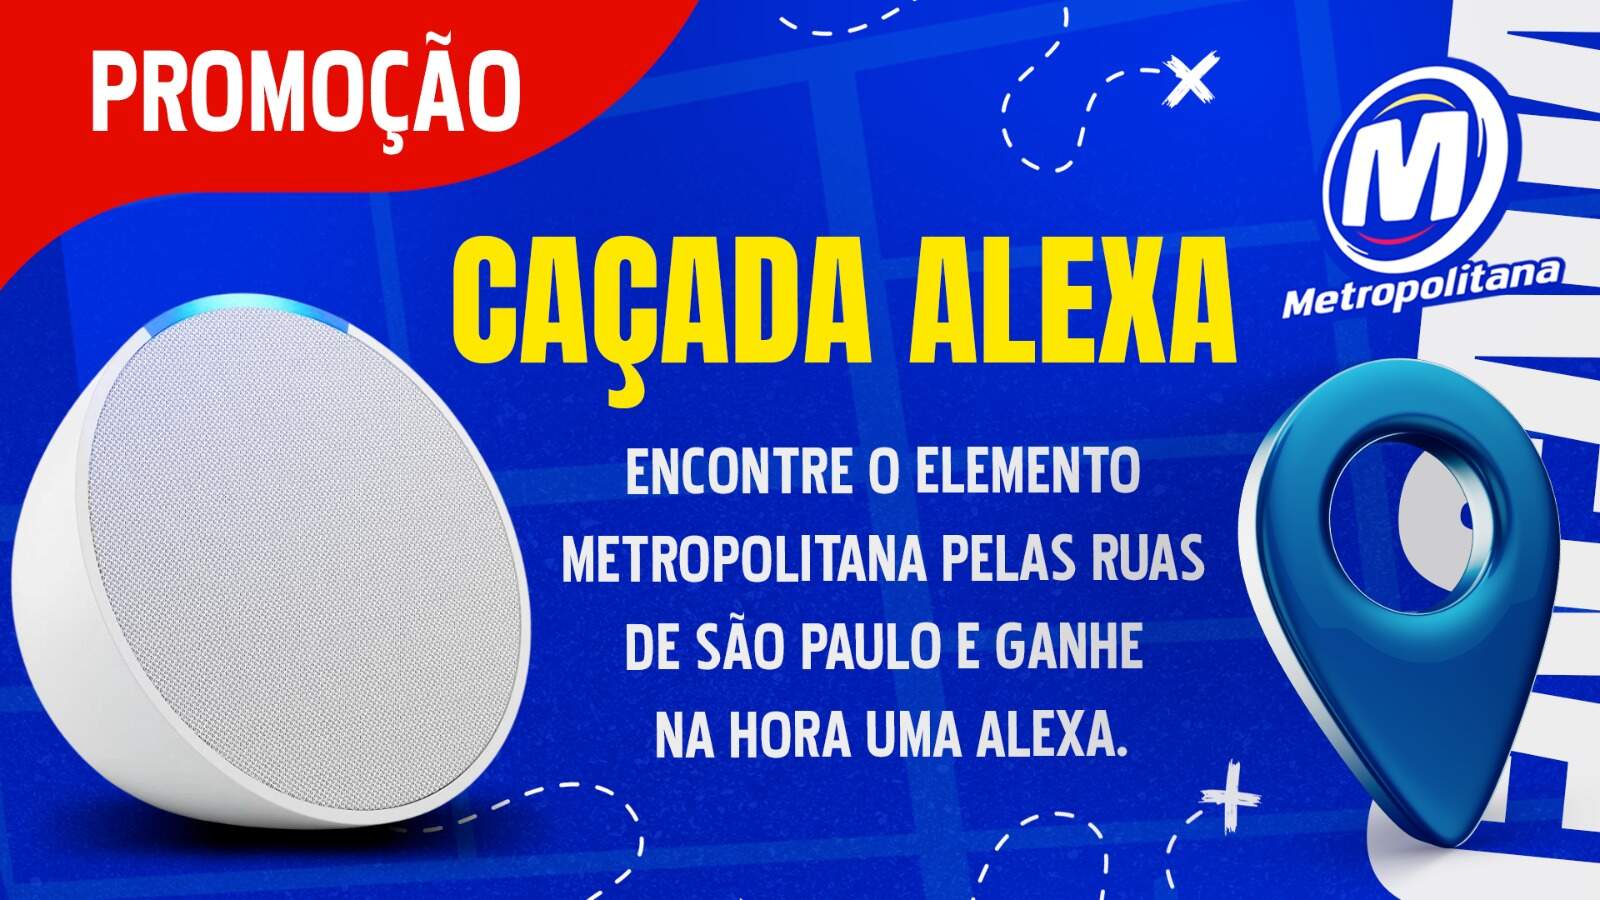 [ENCERRADA] Promoção: CAÇADA ALEXA NA METROPOLITANA - Metropolitana FM